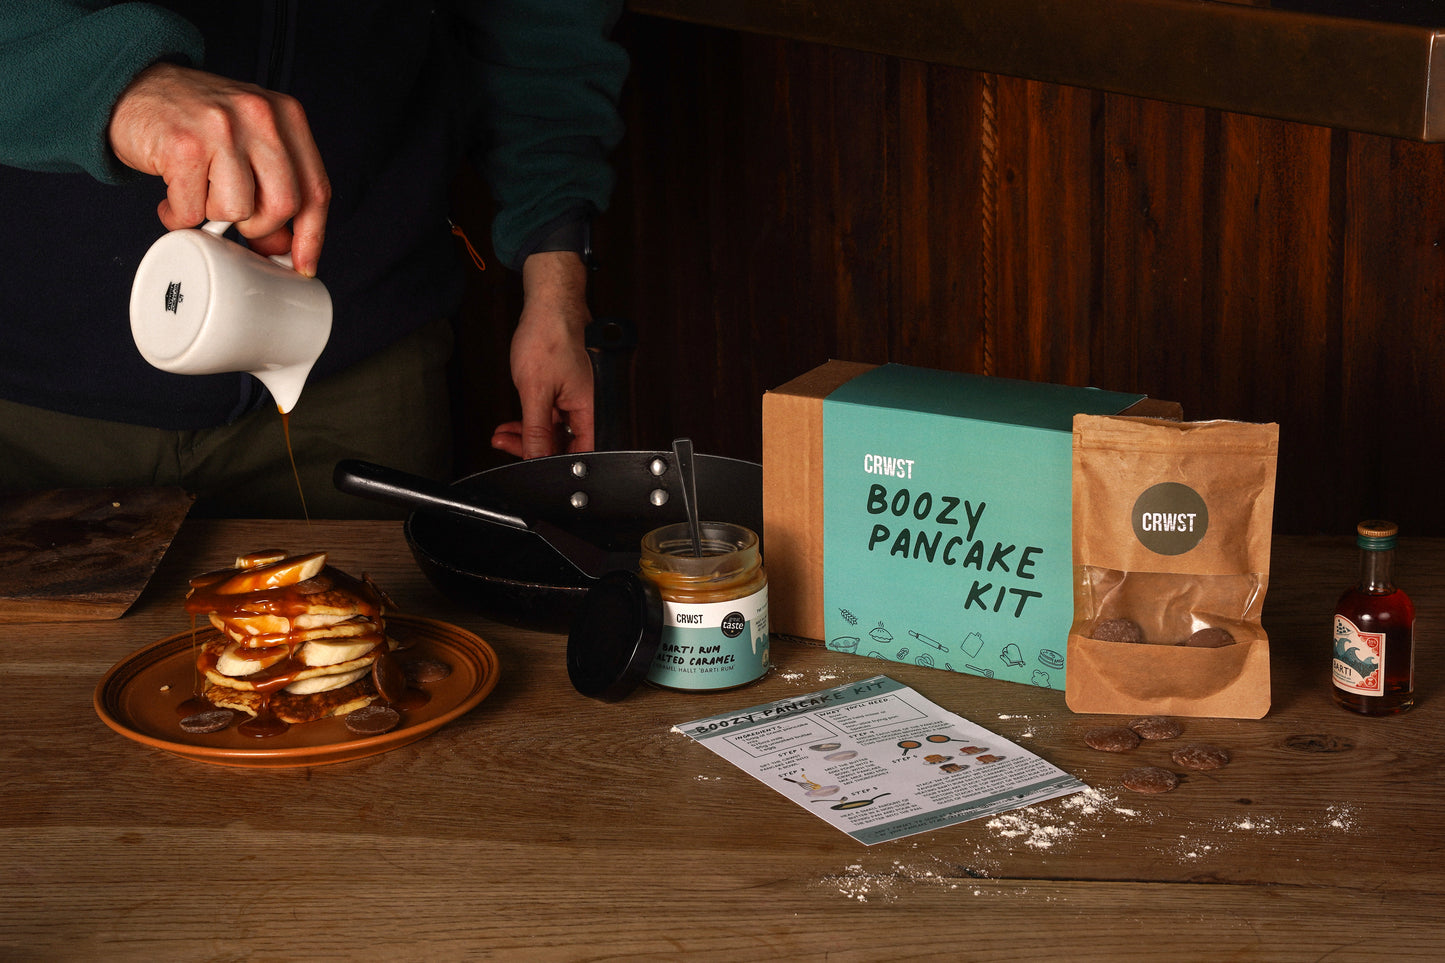 Boozy Pancake Kit